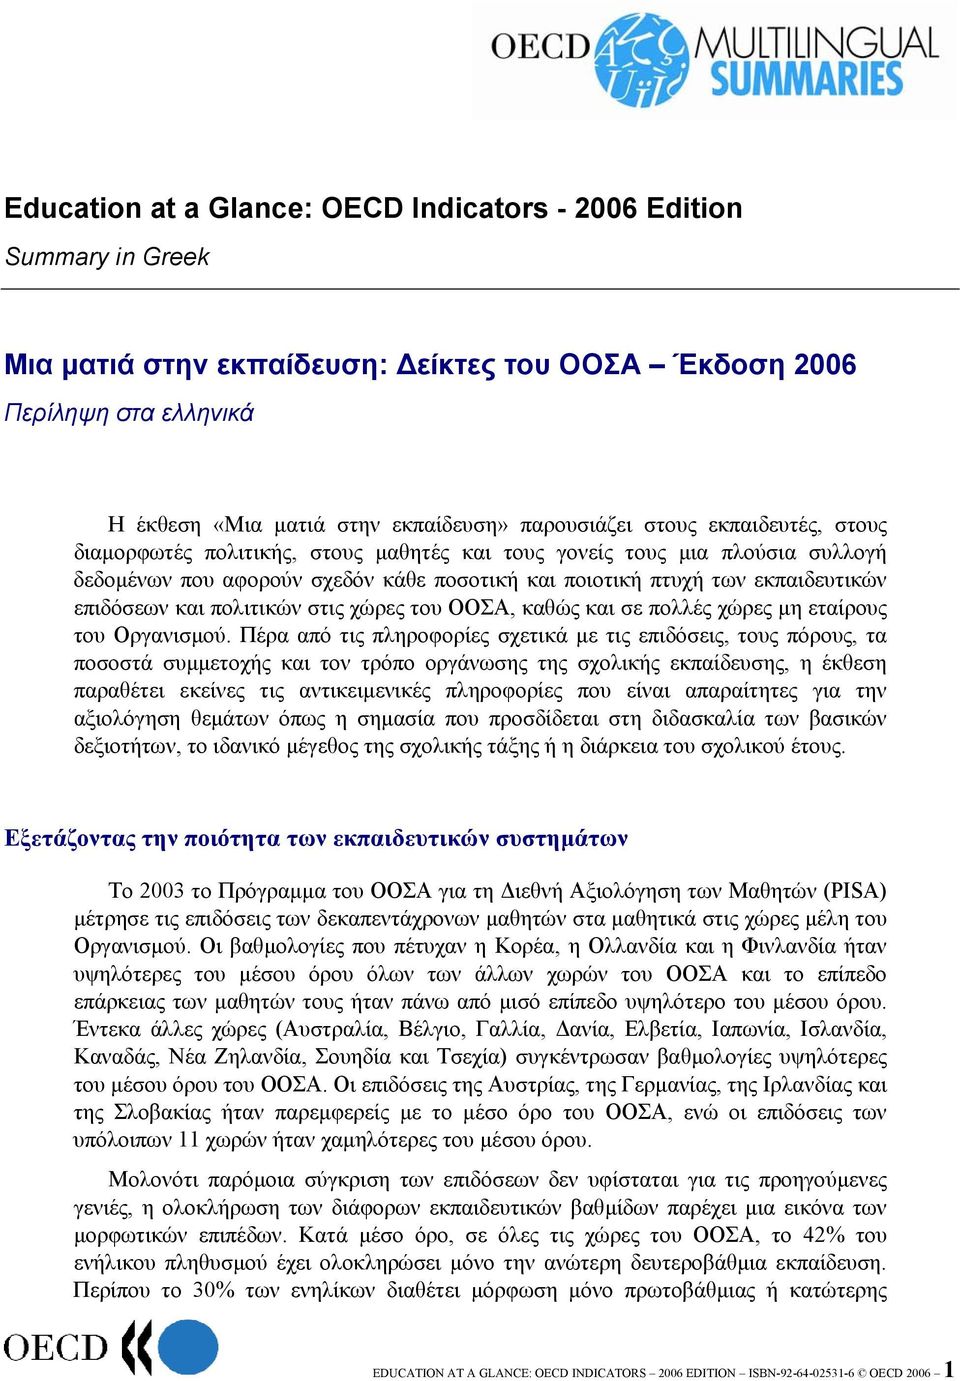 πολιτικών στις χώρες του ΟΟΣΑ, καθώς και σε πολλές χώρες µη εταίρους του Οργανισµού.